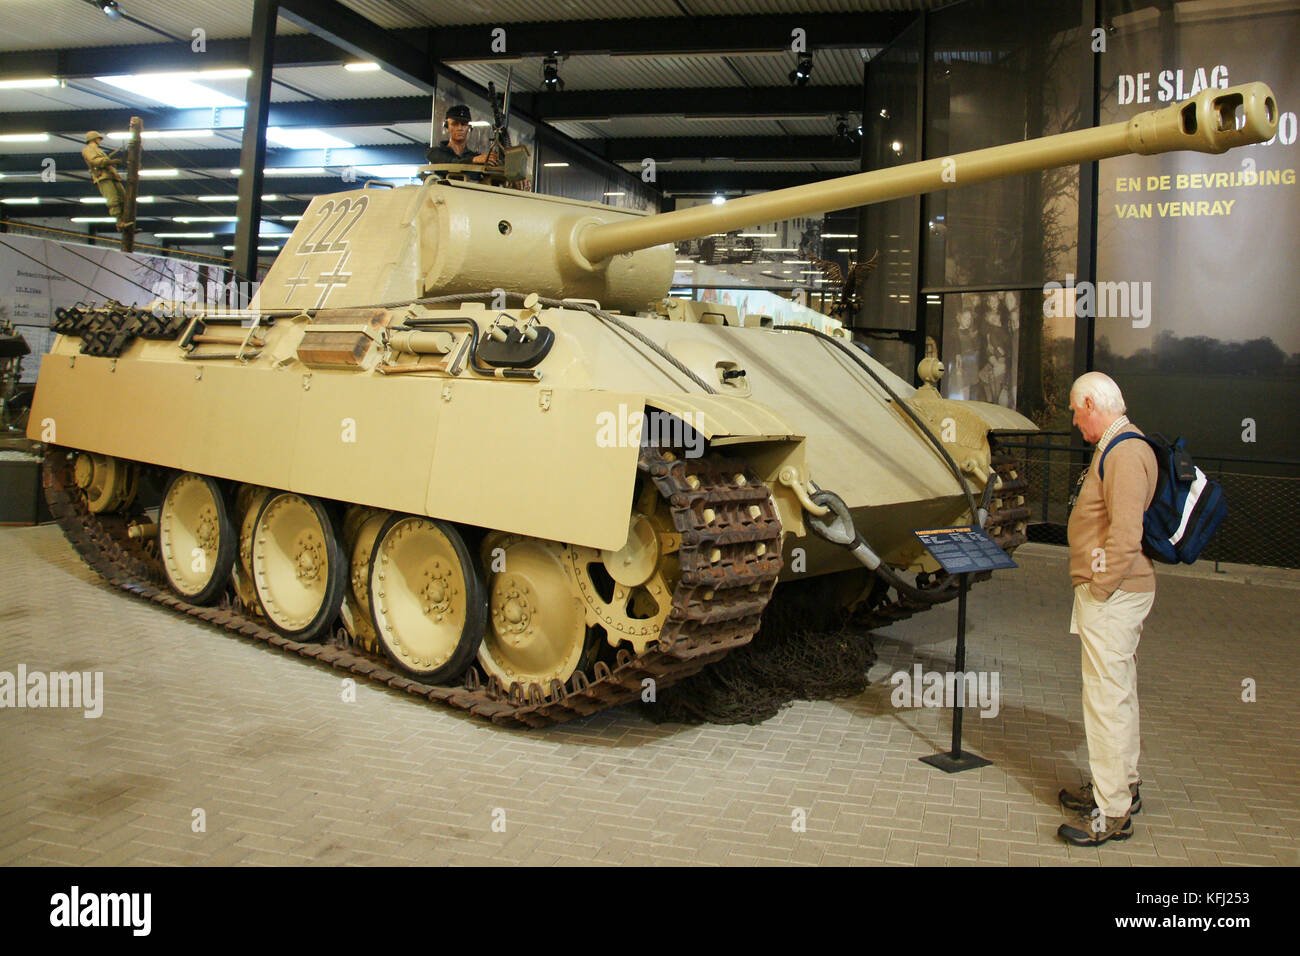 L'allemand WW2 tank Panther conservé au Musée de la guerre, Pays-Bas Overloon Banque D'Images